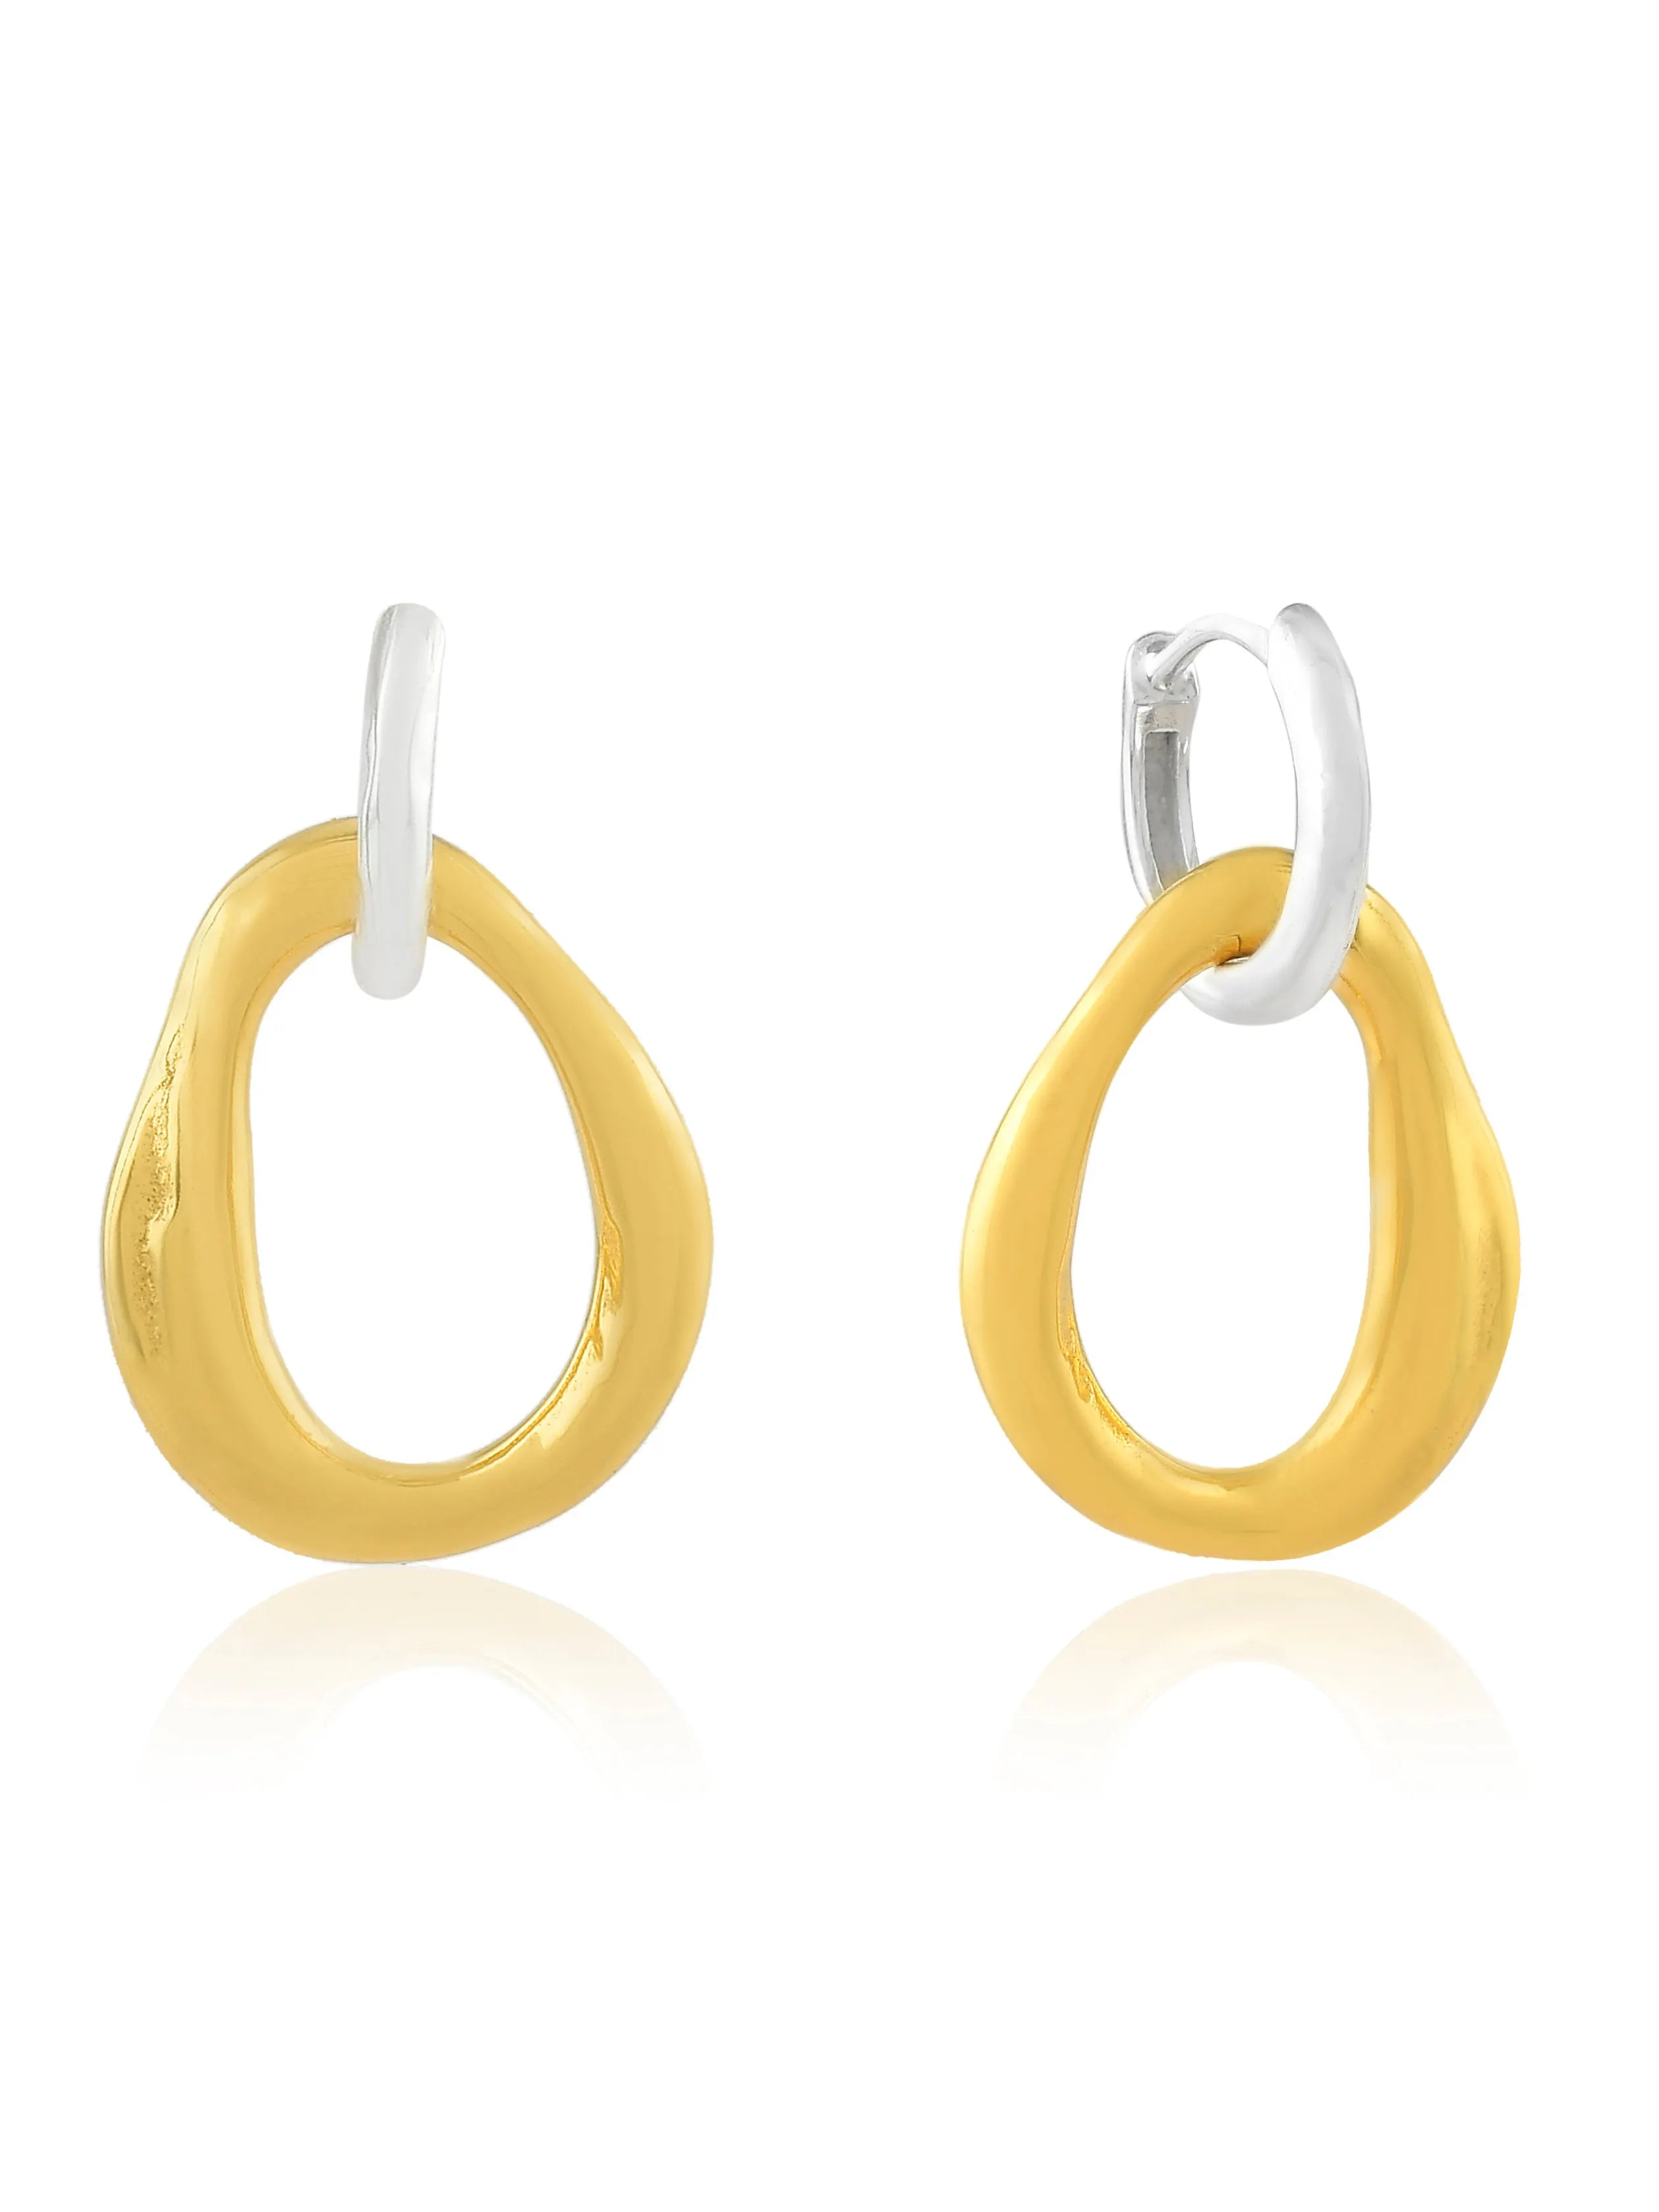 A pair of Shyla - Meridien Hoops - Gold hoop earrings with intertwining hoops.